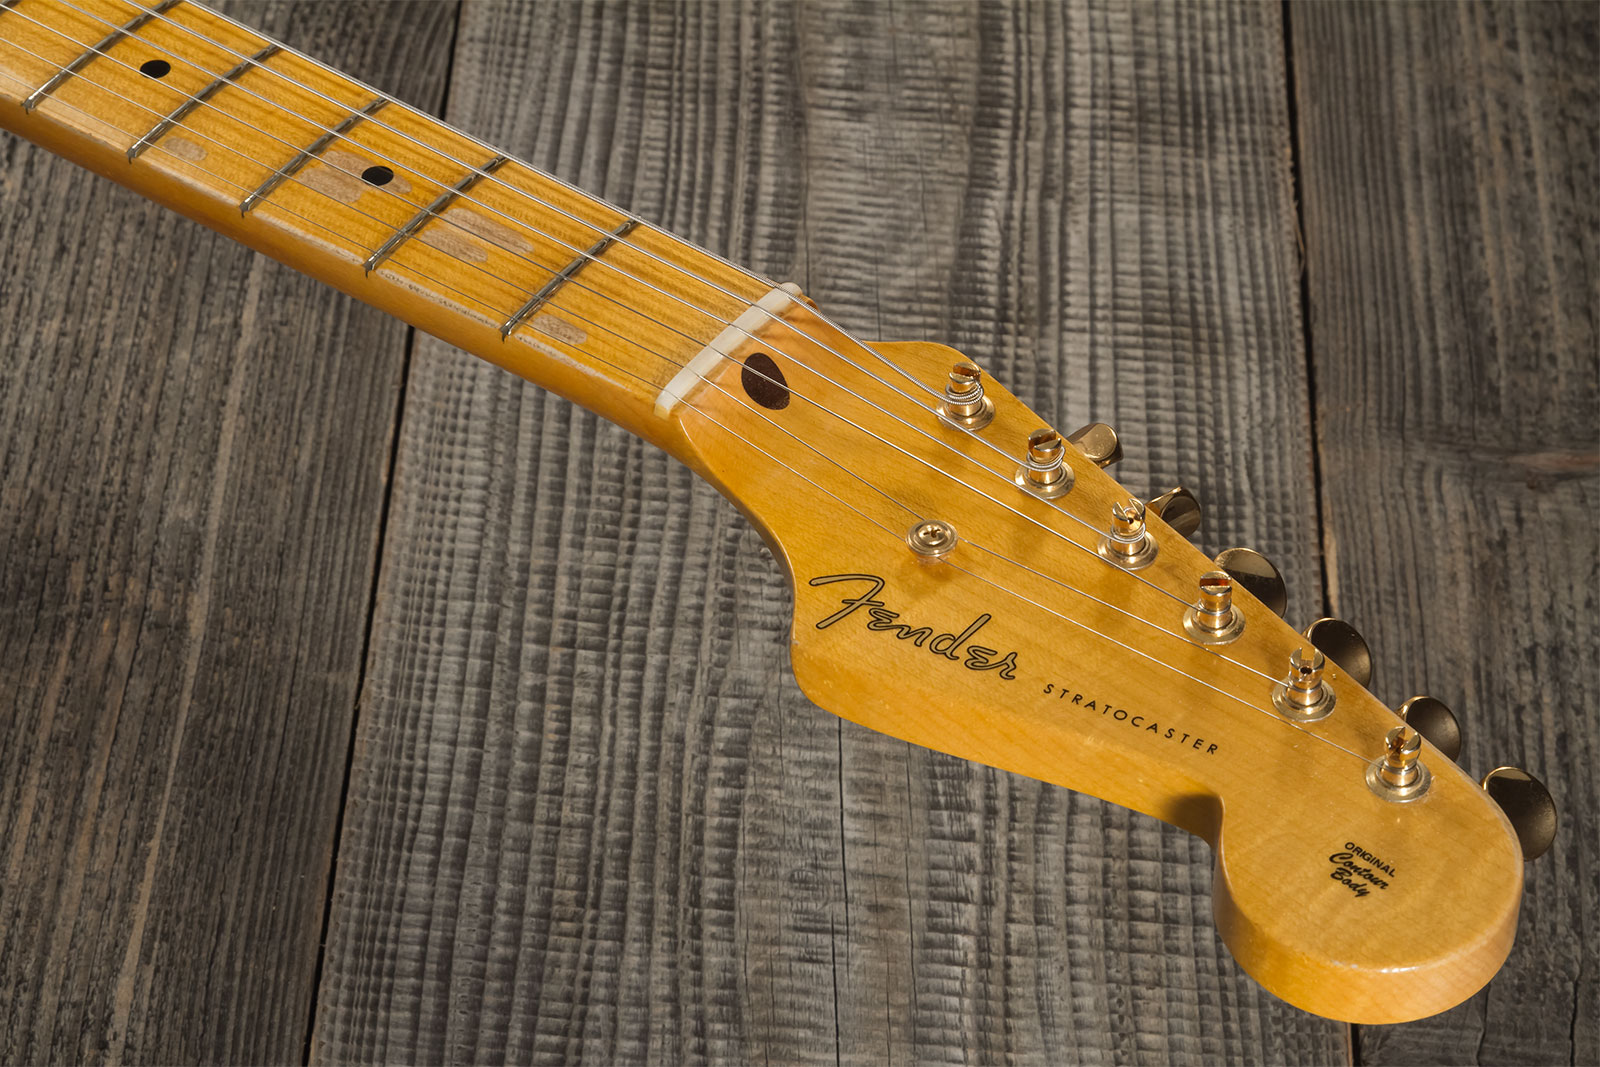 Fender Custom Shop Strat 1955 Hardtail Gold Hardware 3s Trem Mn #cz568215 - Journeyman Relic Natural Blonde - Elektrische gitaar in Str-vorm - Variati